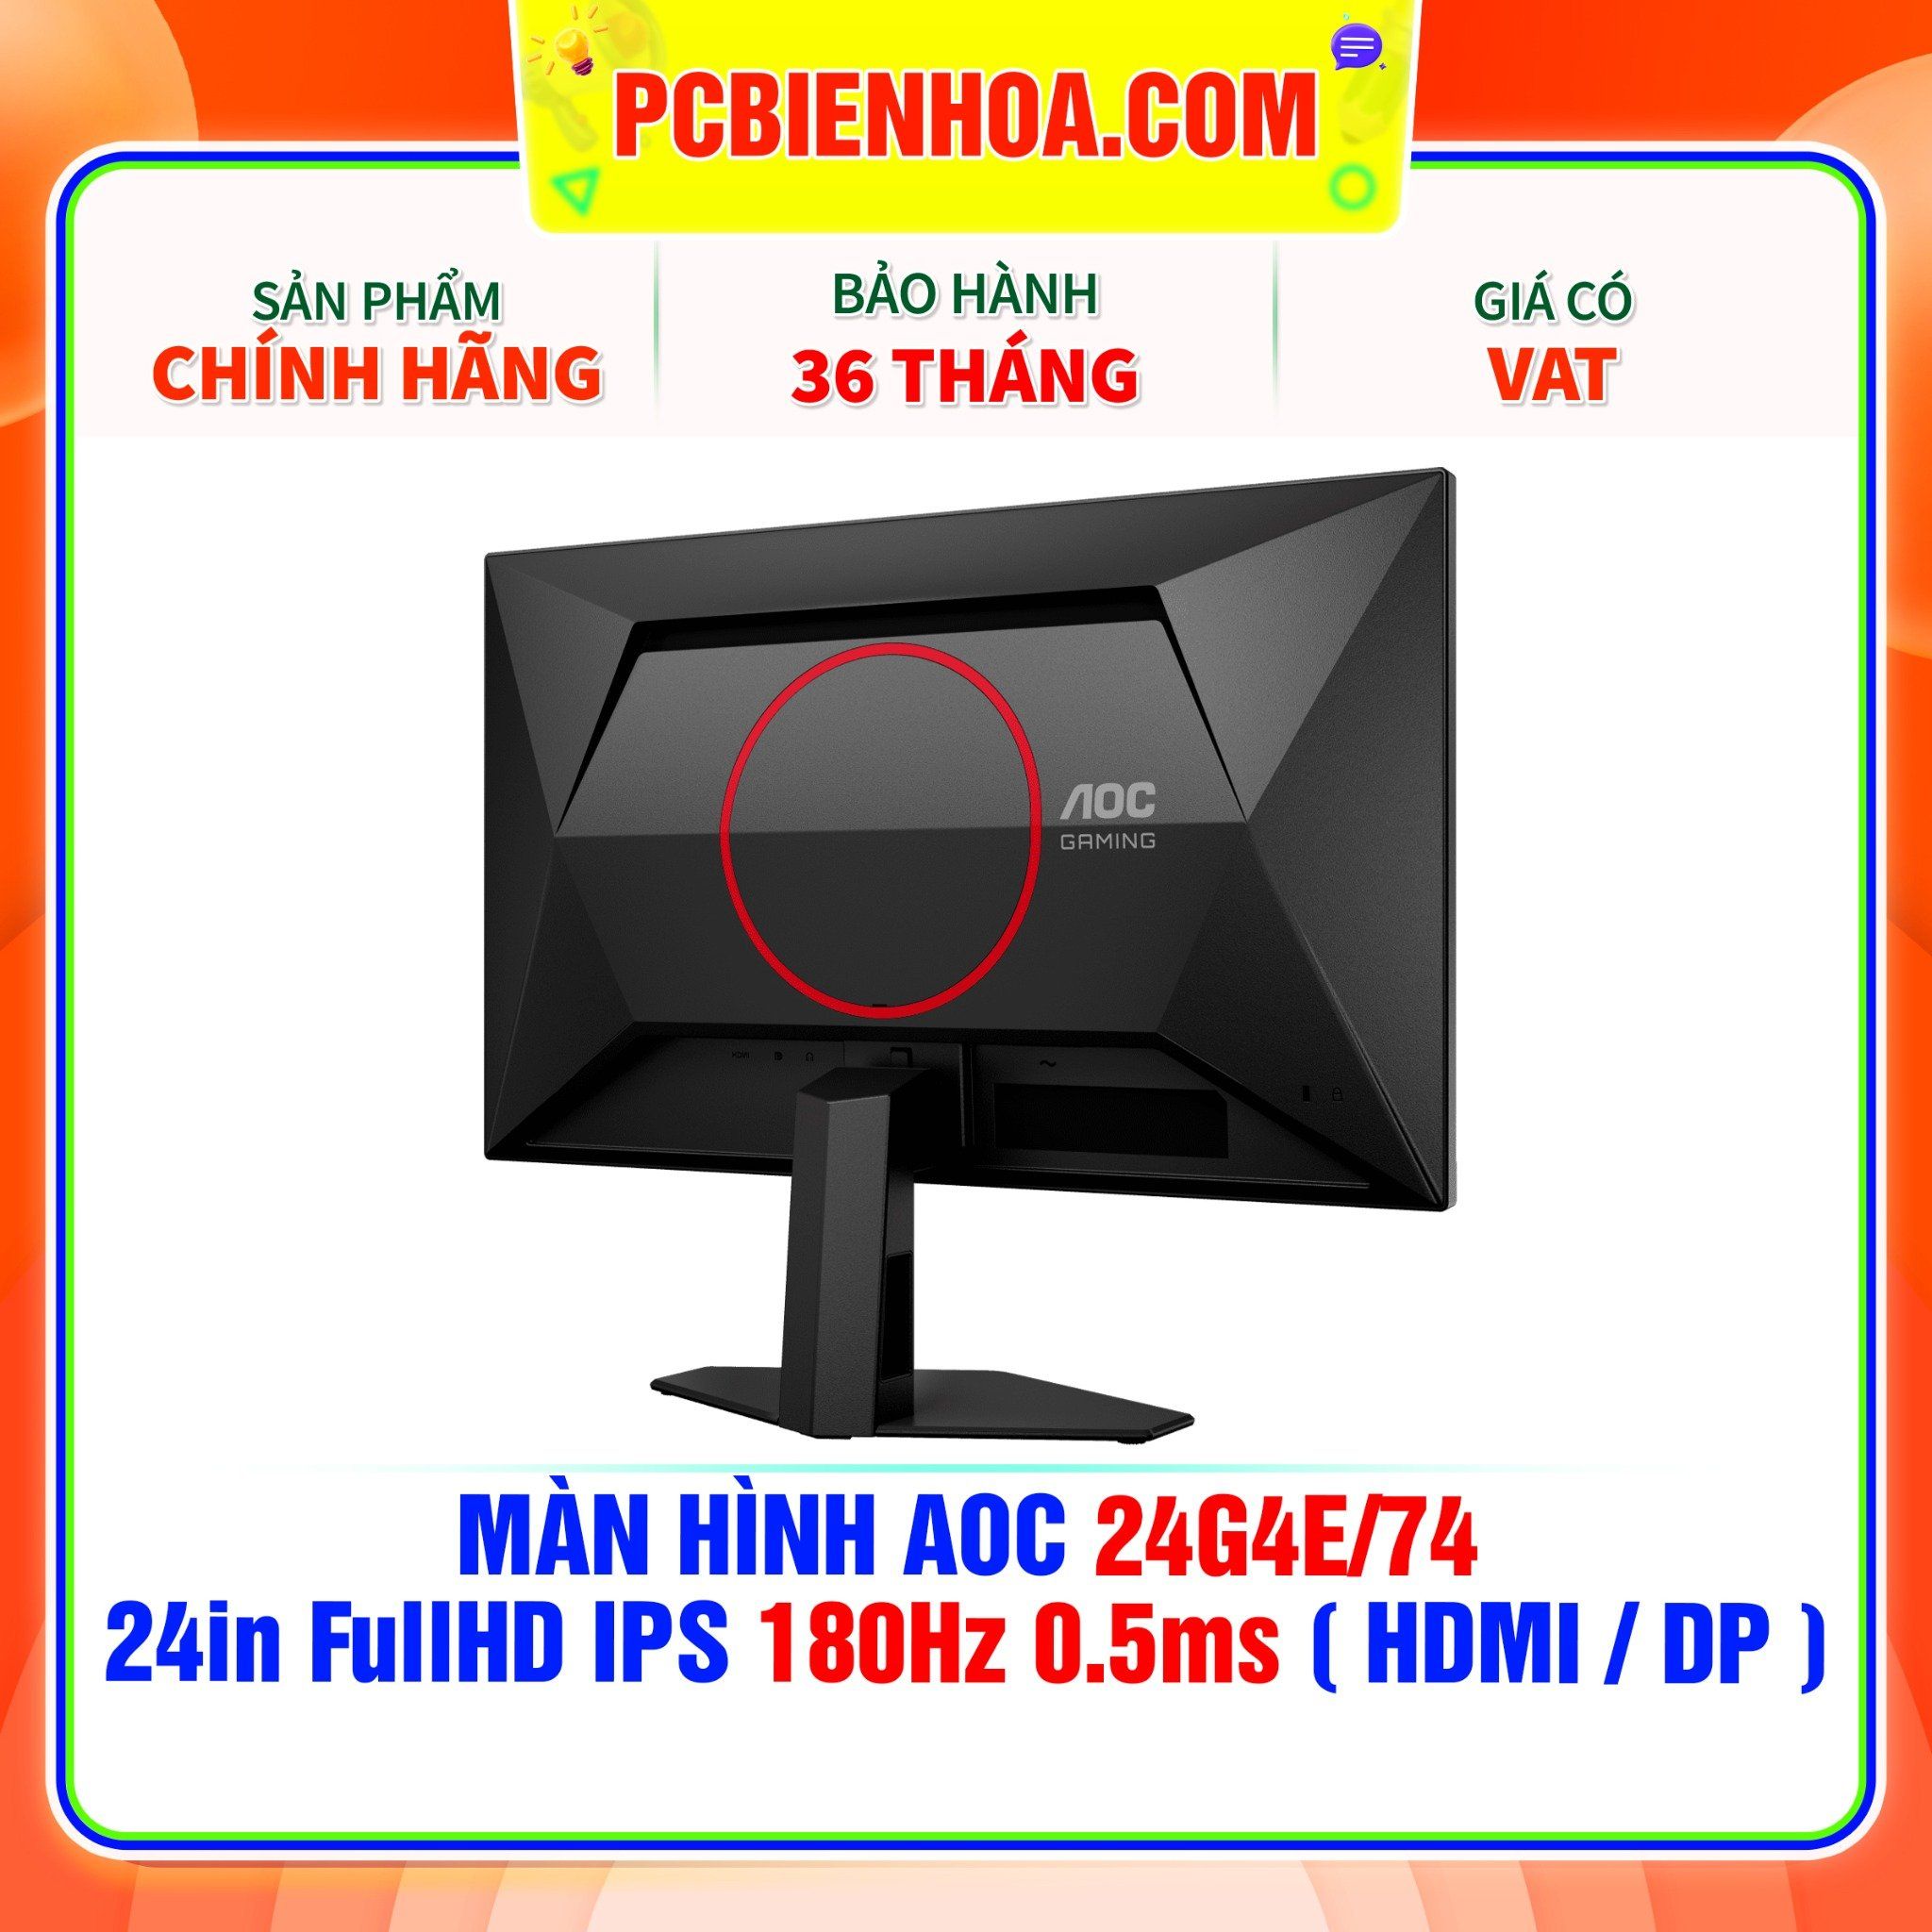  MÀN HÌNH AOC 24G4E/74 - 24in FullHD IPS 180Hz 0.5ms ( HDMI / DP ) 